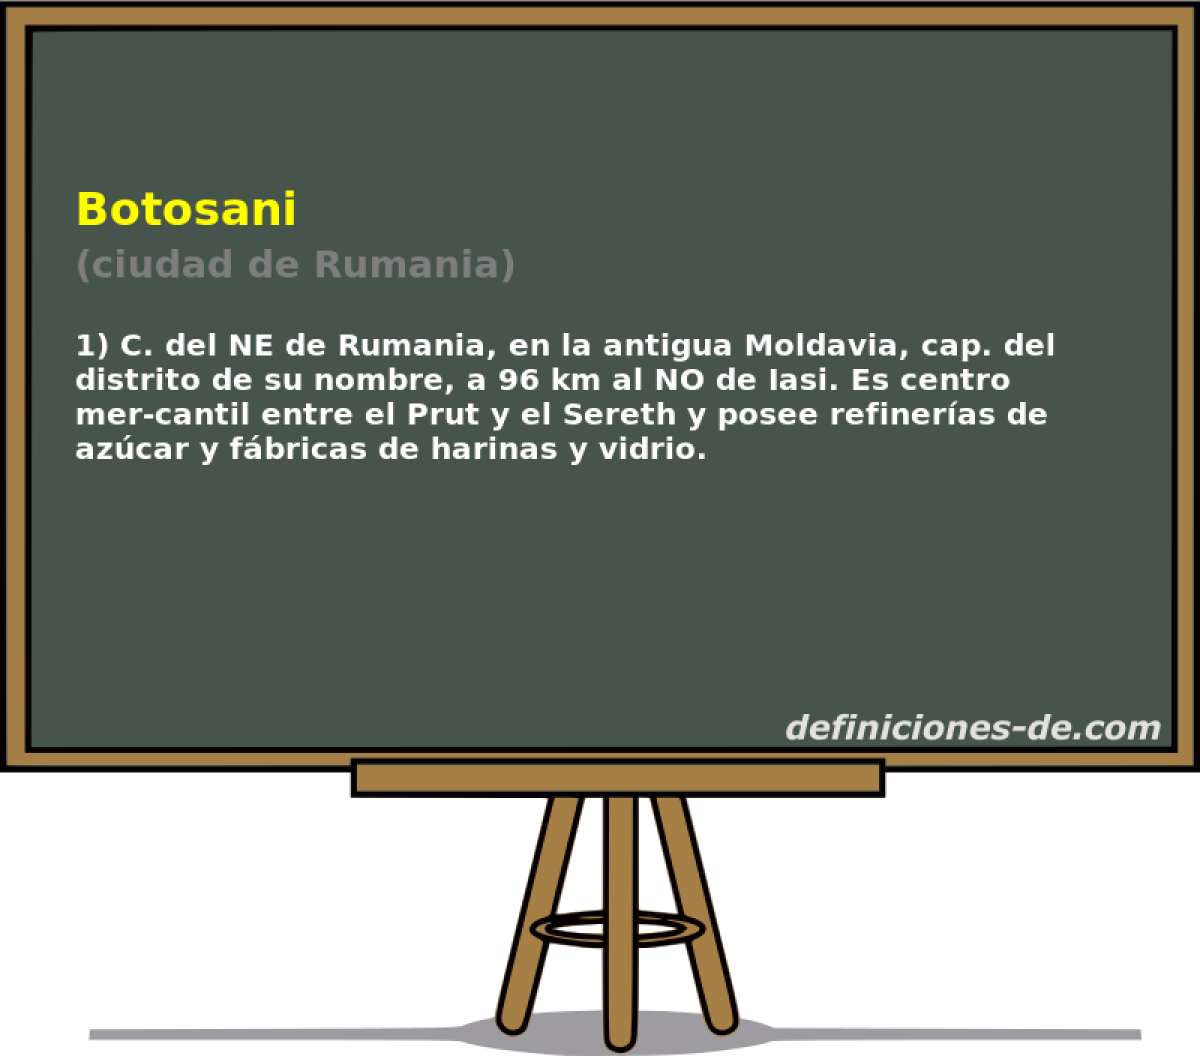 Botosani (ciudad de Rumania)